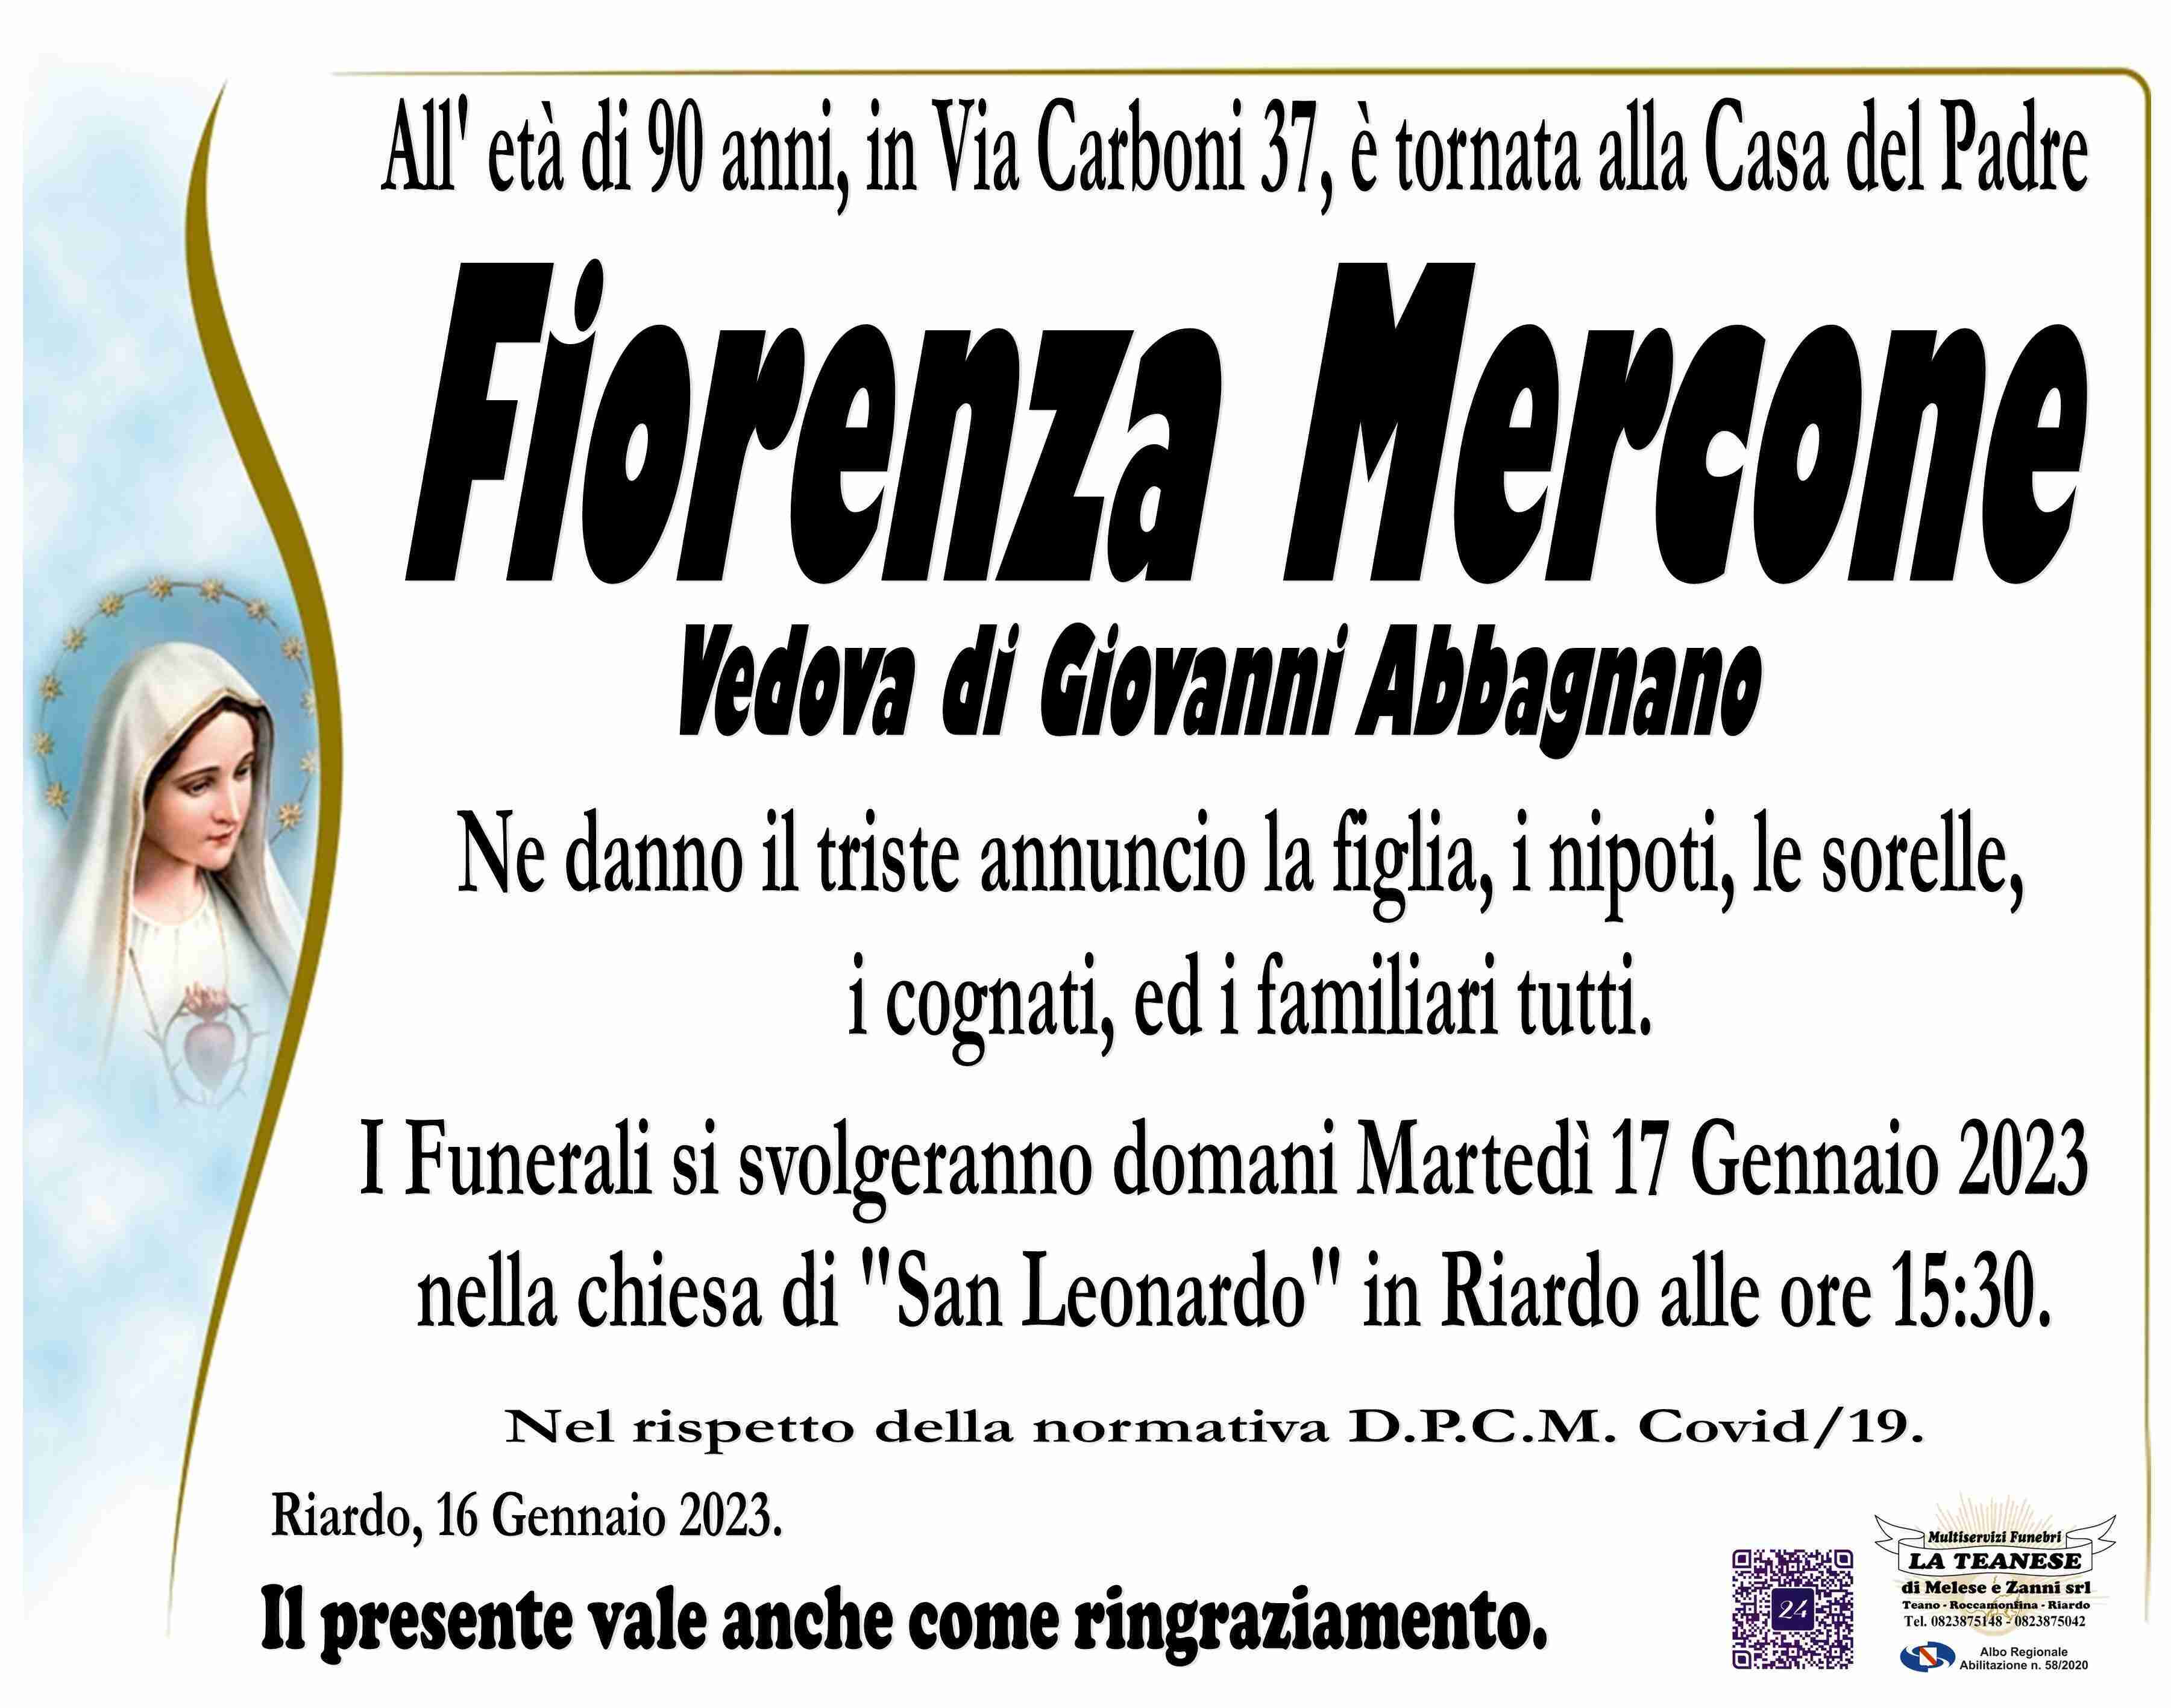 Fiorenza Mercone